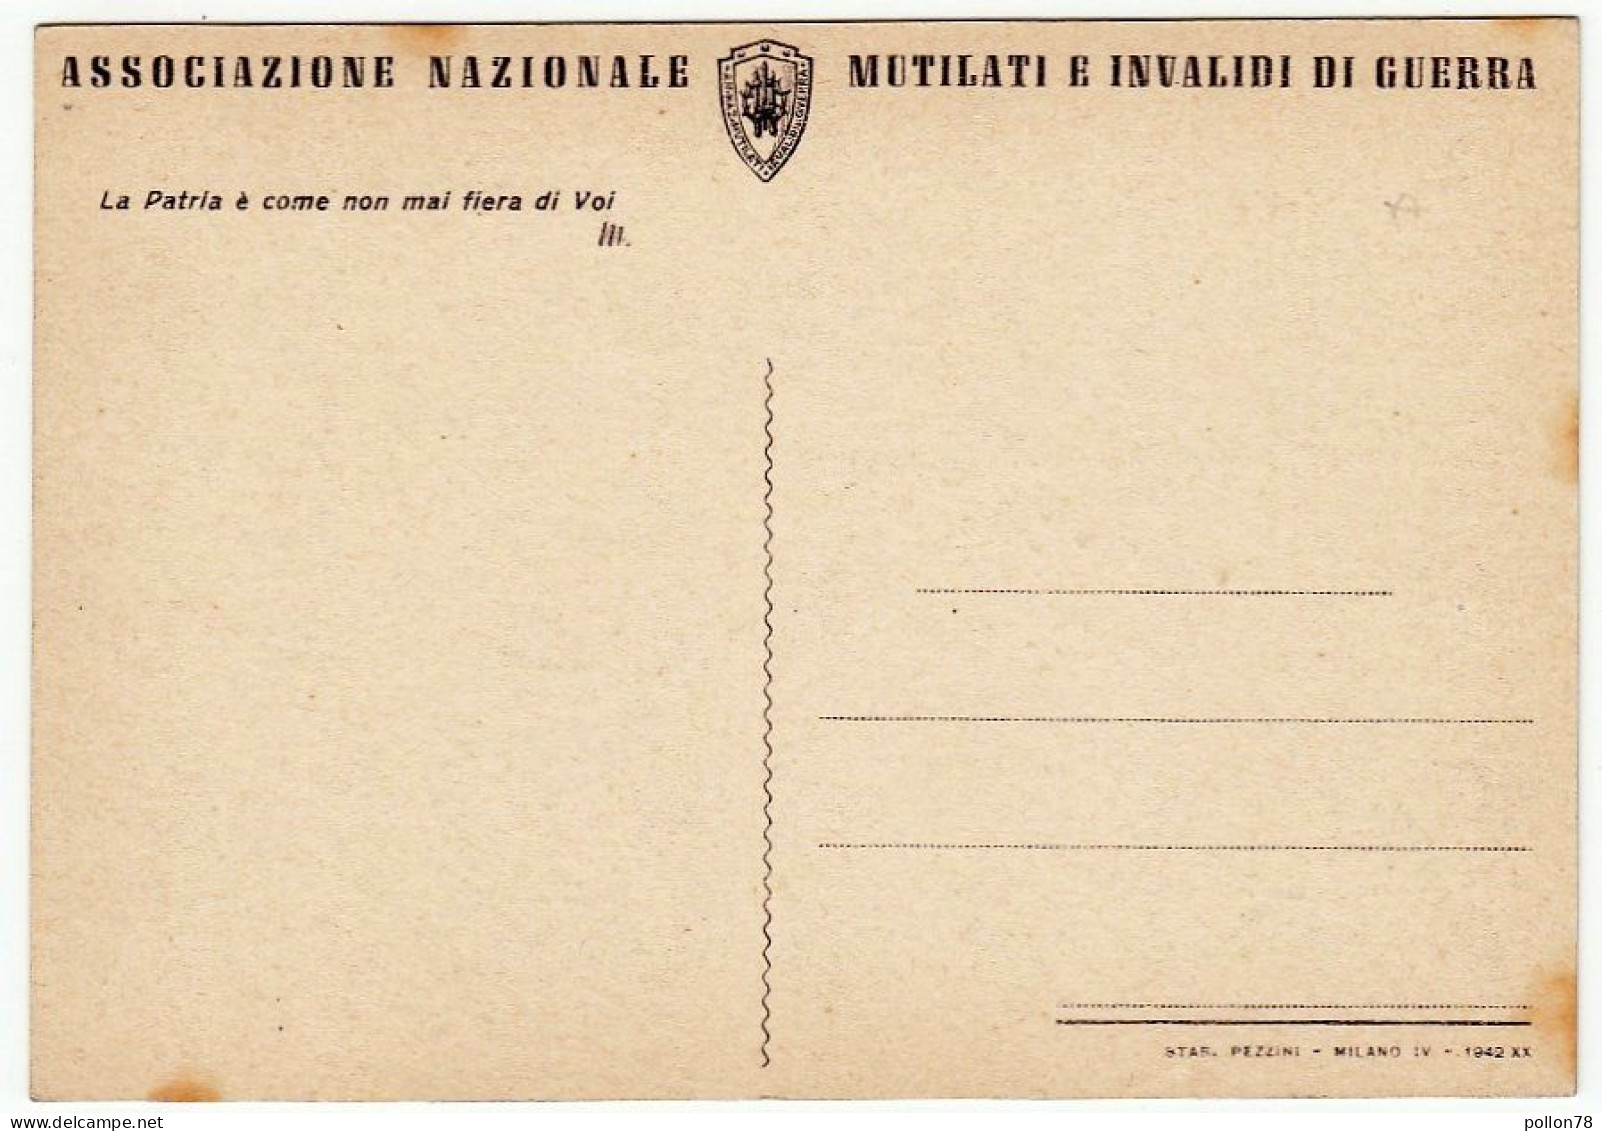 MILITARI - IL FANTE E IL LEGIONARIO - A. G. SANTAGATA - Edita Nel 1942 - Vedi Retro - Uniforms